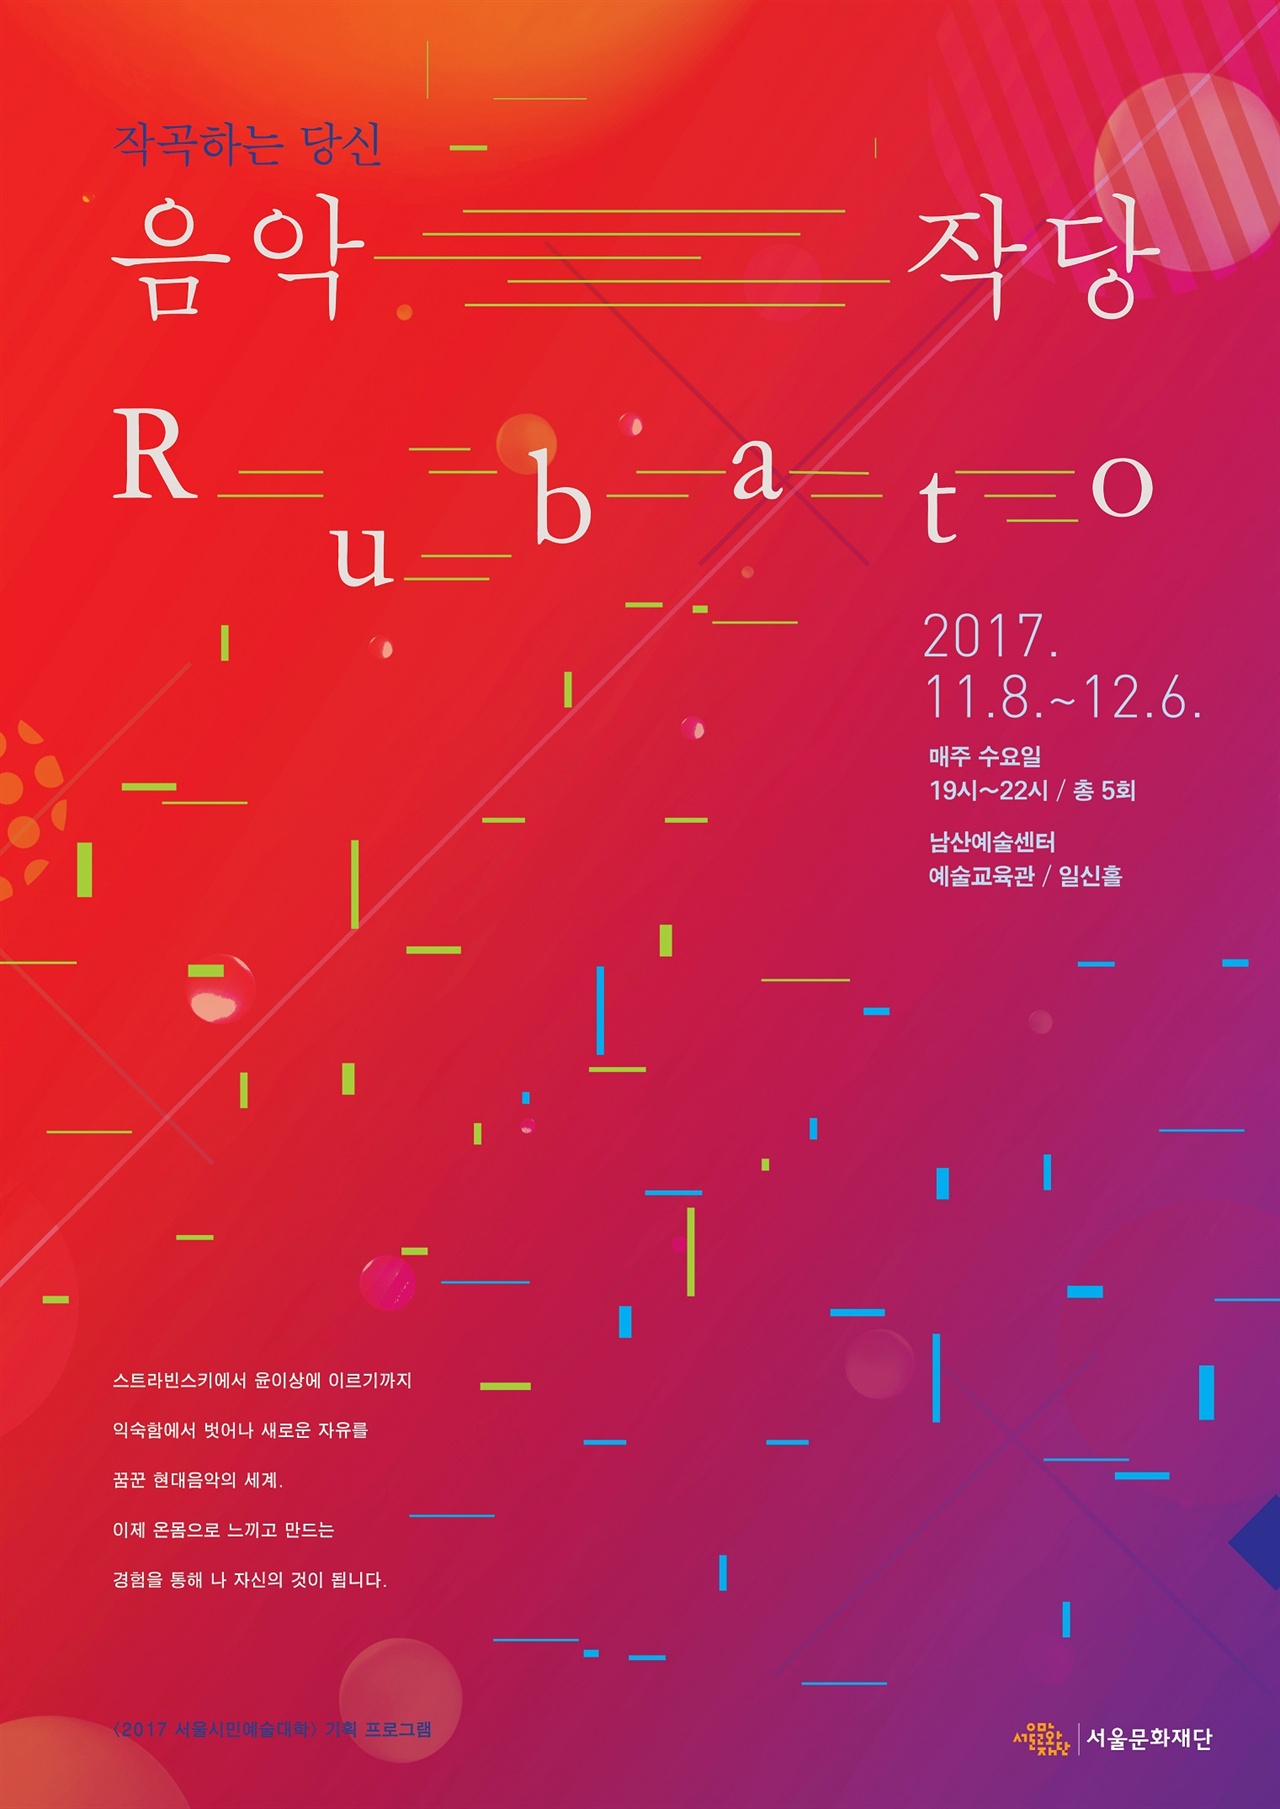 서울시민예술대학 기획프로그램으로 열리는 '음악작당 루바토'는 어렵기만 한 '현대음악'을 직접 체험하면서 작곡해보는 프로그램으로 구성했다. 루바토는 '자유로운 템포로'라는 뜻으로 해석되는 음악 기호이며, 현대음악의 성격을 잘 드러내기도 한다. 